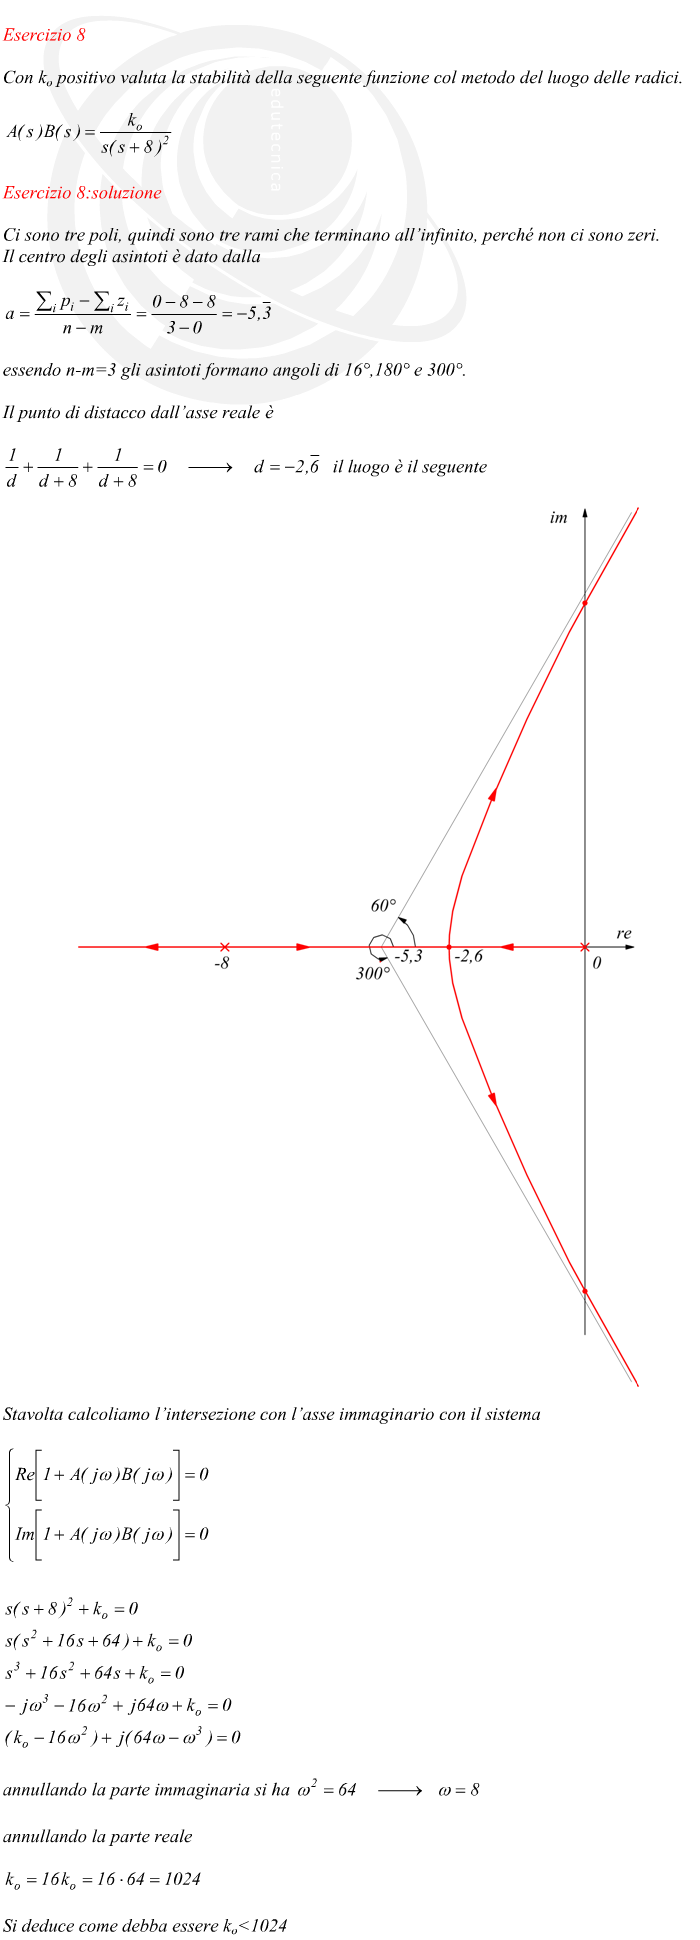 Ci sono tre poli, quindi sono tre rami che terminano all’infinito, perché non ci sono zeri. Il centro degli asintoti è dato dalla essendo n-m=3 gli asintoti formano angoli di 16°,180° e 300°. Il punto di distacco dall’asse reale è Il luogo è il seguente